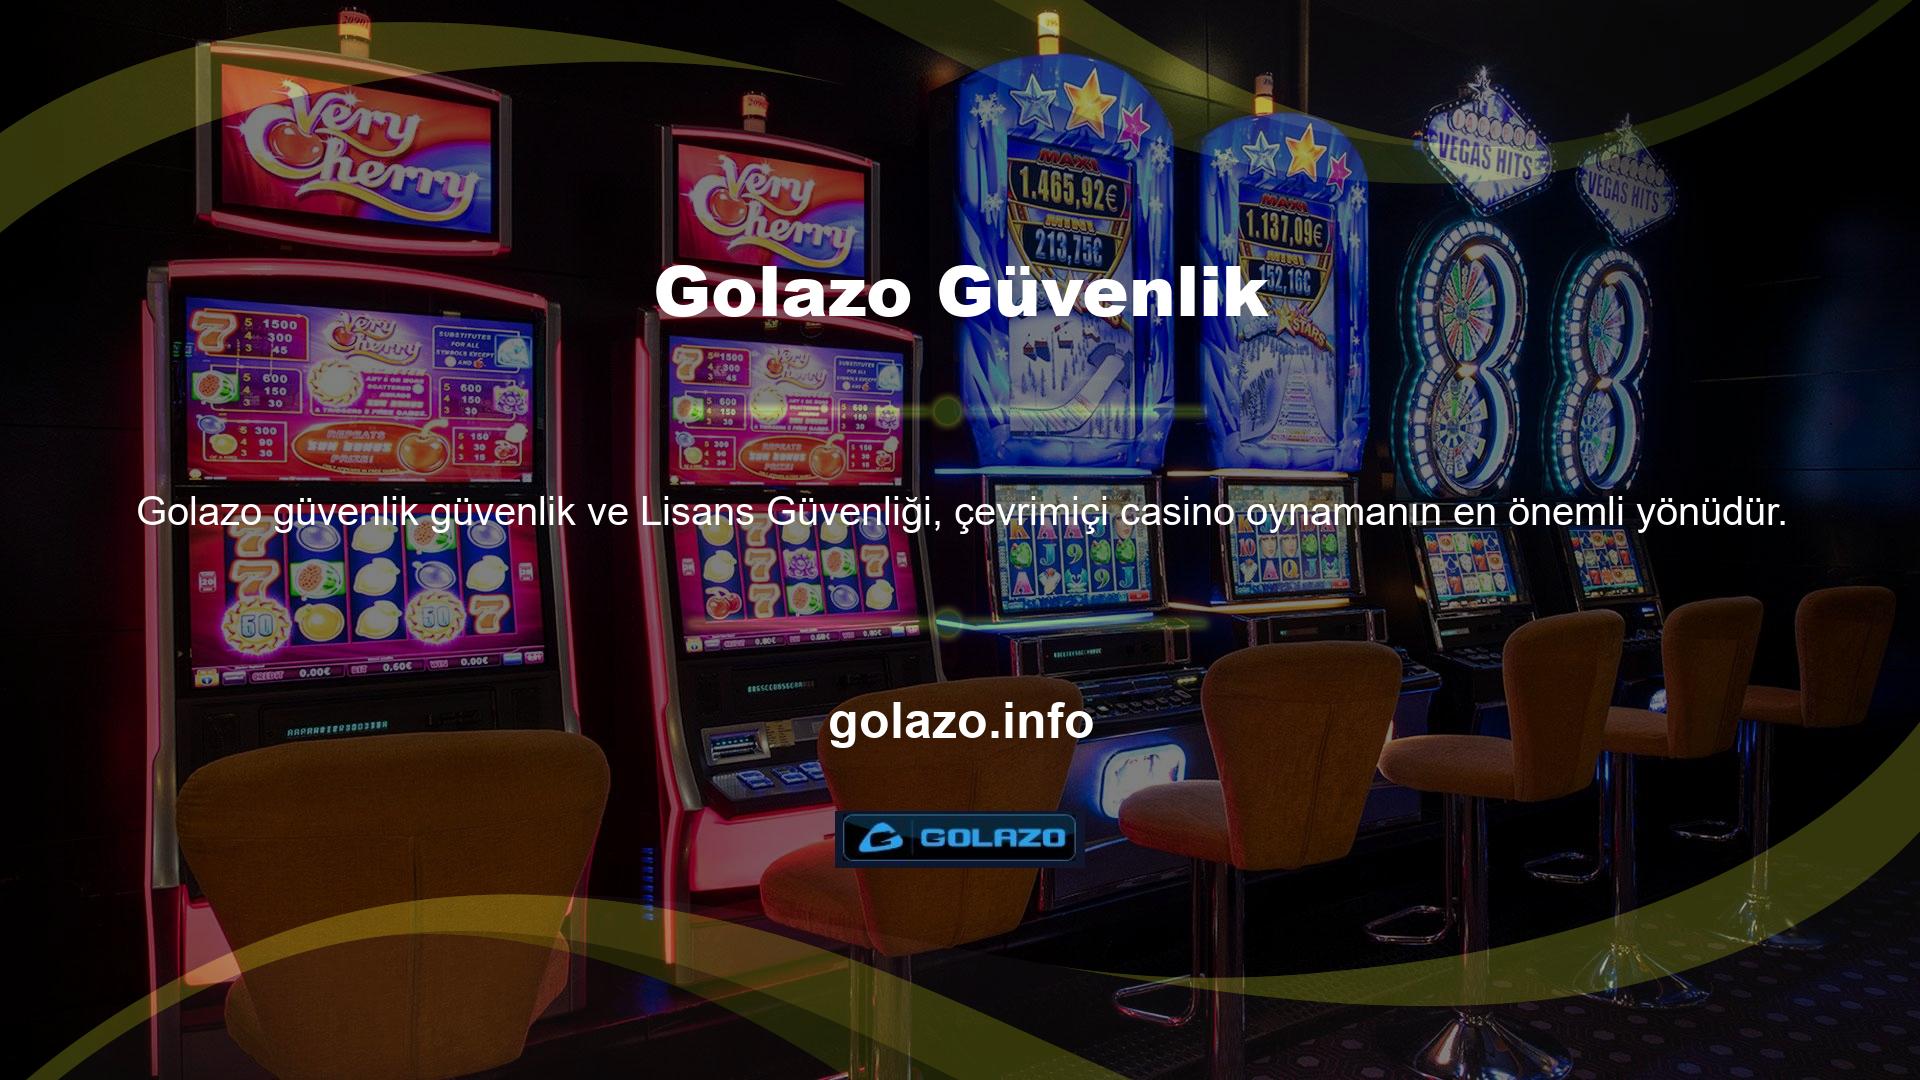 Golazo Güvenlik ve Lisanslama Golazo web sitesi bunun önemini anlıyor ve oyuncularına oldukça güvenilir bir hizmet sunuyor